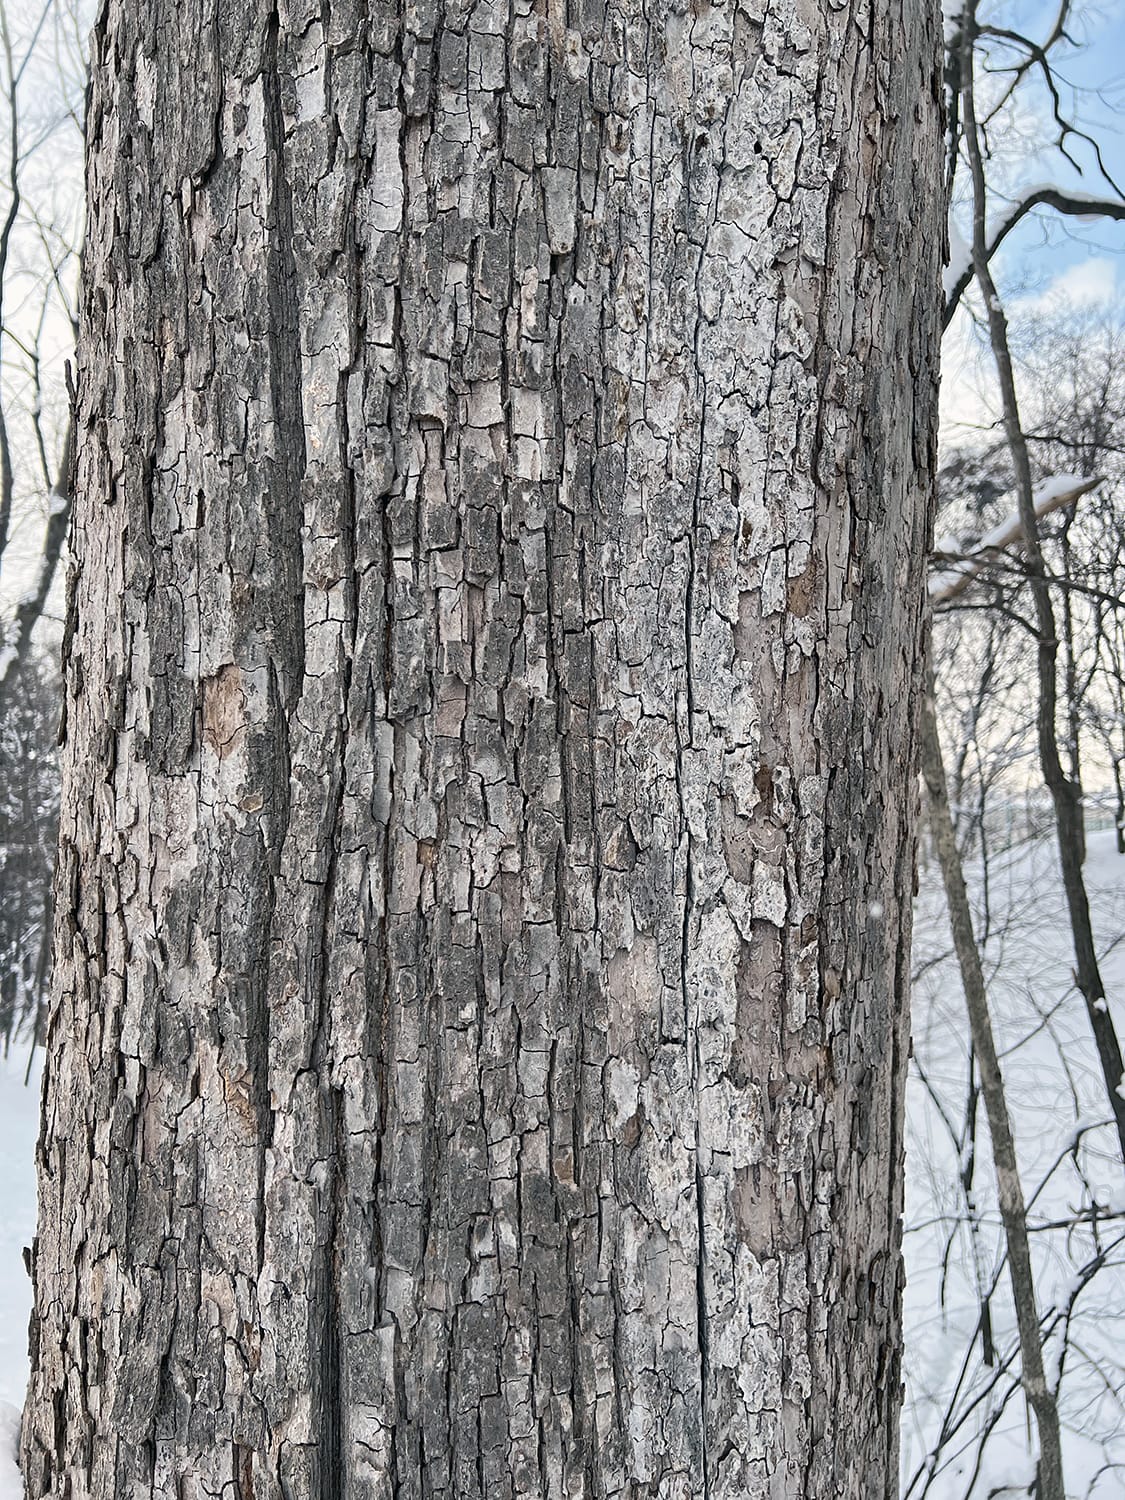 札幌市内住宅地の敷地に生えるオヒョウニレの樹皮